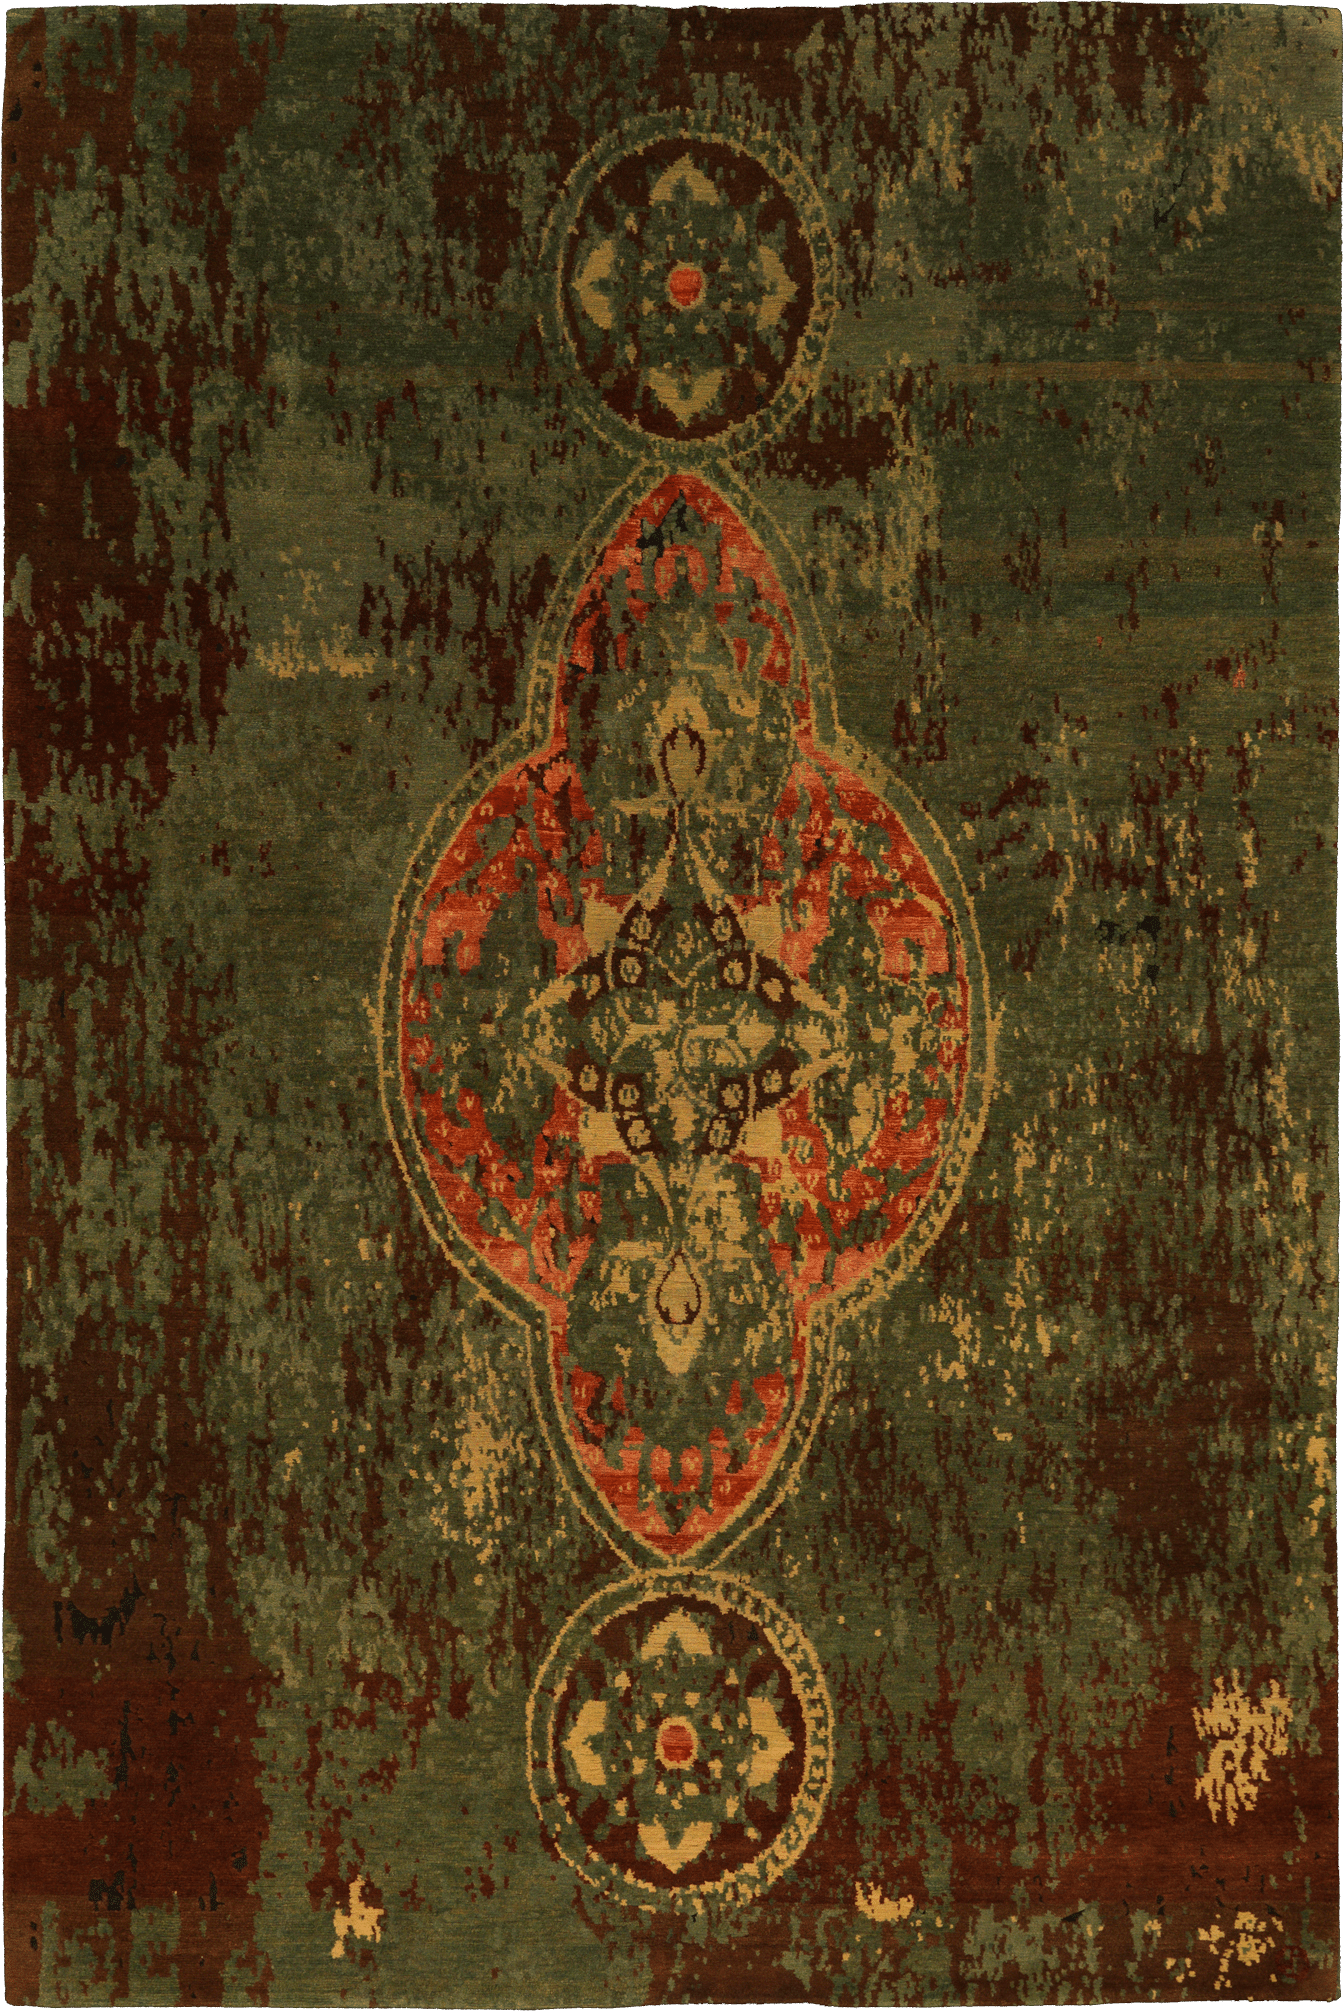 Geba Teppich "Arabia" in dunkelgrün-braun-rot und gelb im klassischen Design mit zentralem Motiv, aus Nepal, 100 Knoten, gefertigt aus tibetischer Hochlandschafwolle - Produktbild - Geba Teppich